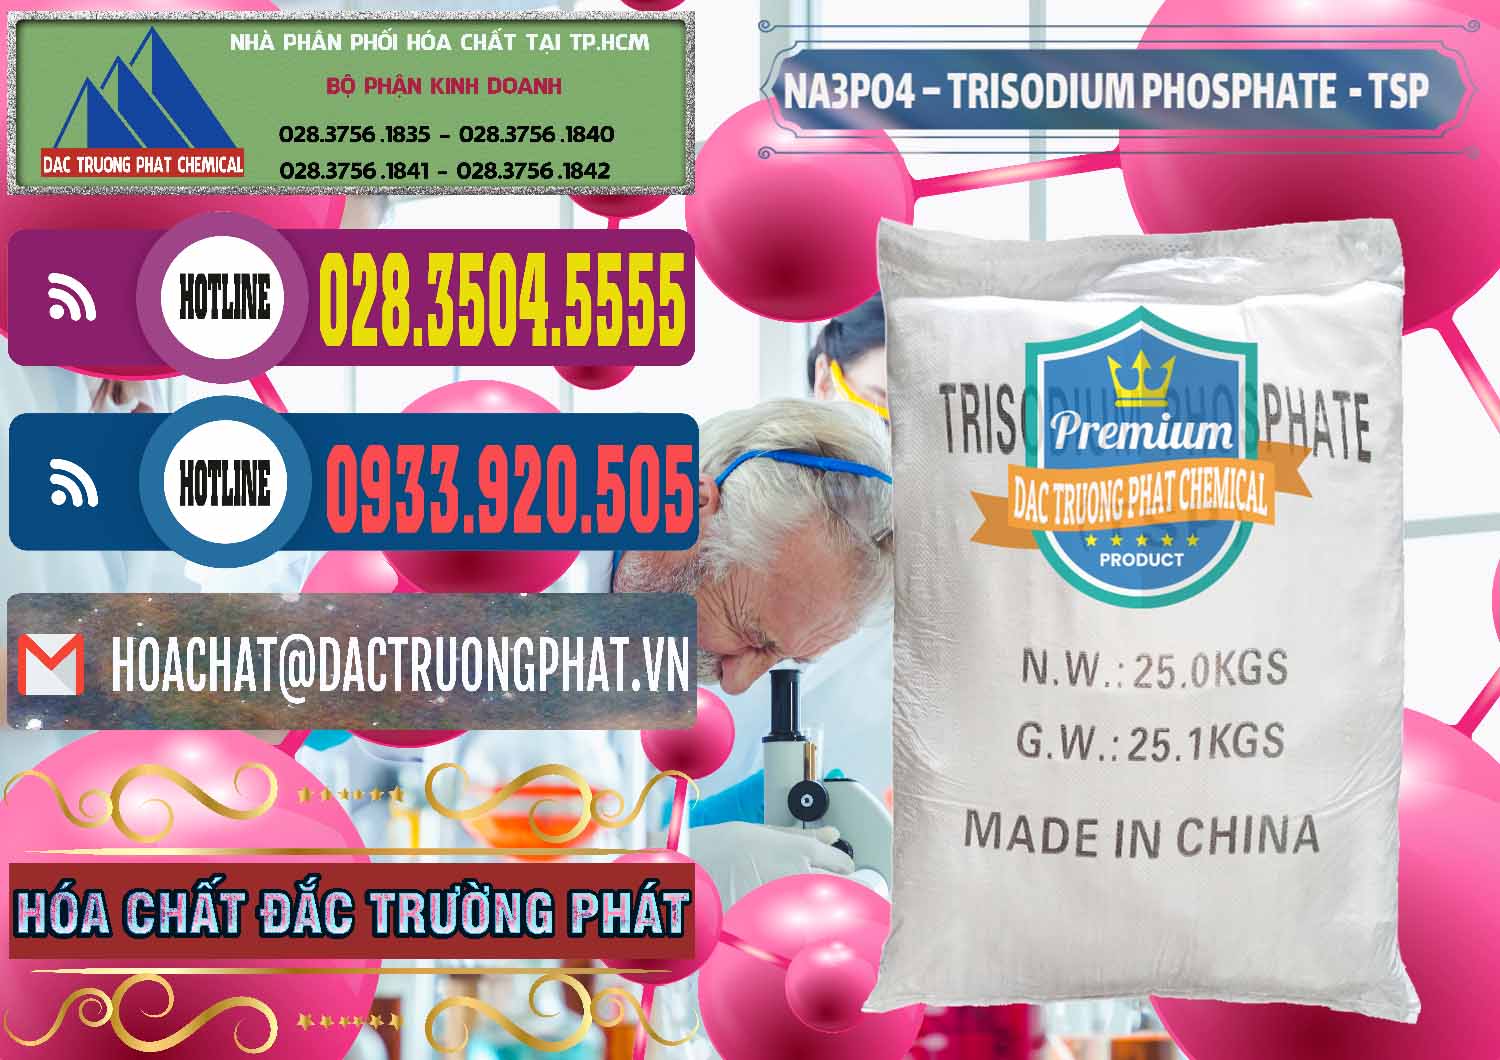 Cty bán & cung cấp Na3PO4 – Trisodium Phosphate Trung Quốc China TSP - 0103 - Cty chuyên bán _ phân phối hóa chất tại TP.HCM - muabanhoachat.com.vn